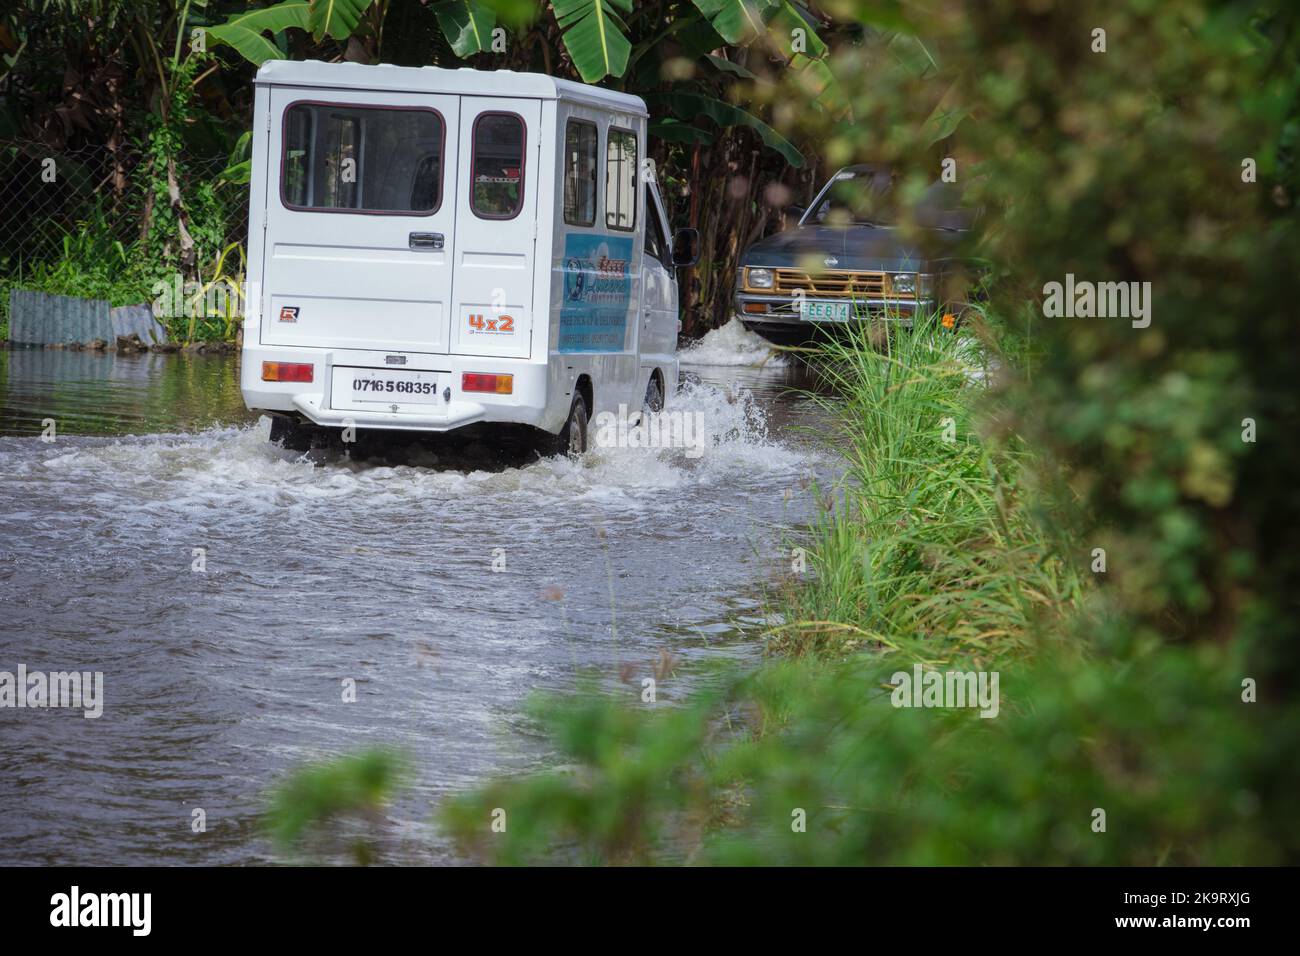 La tempête tropicale grave Paeng ou Nalgae a apporté des inondations et des pluies torrentielles au pays. Fourgonnette roulant sur une route inondée. Opération de décharge. Banque D'Images